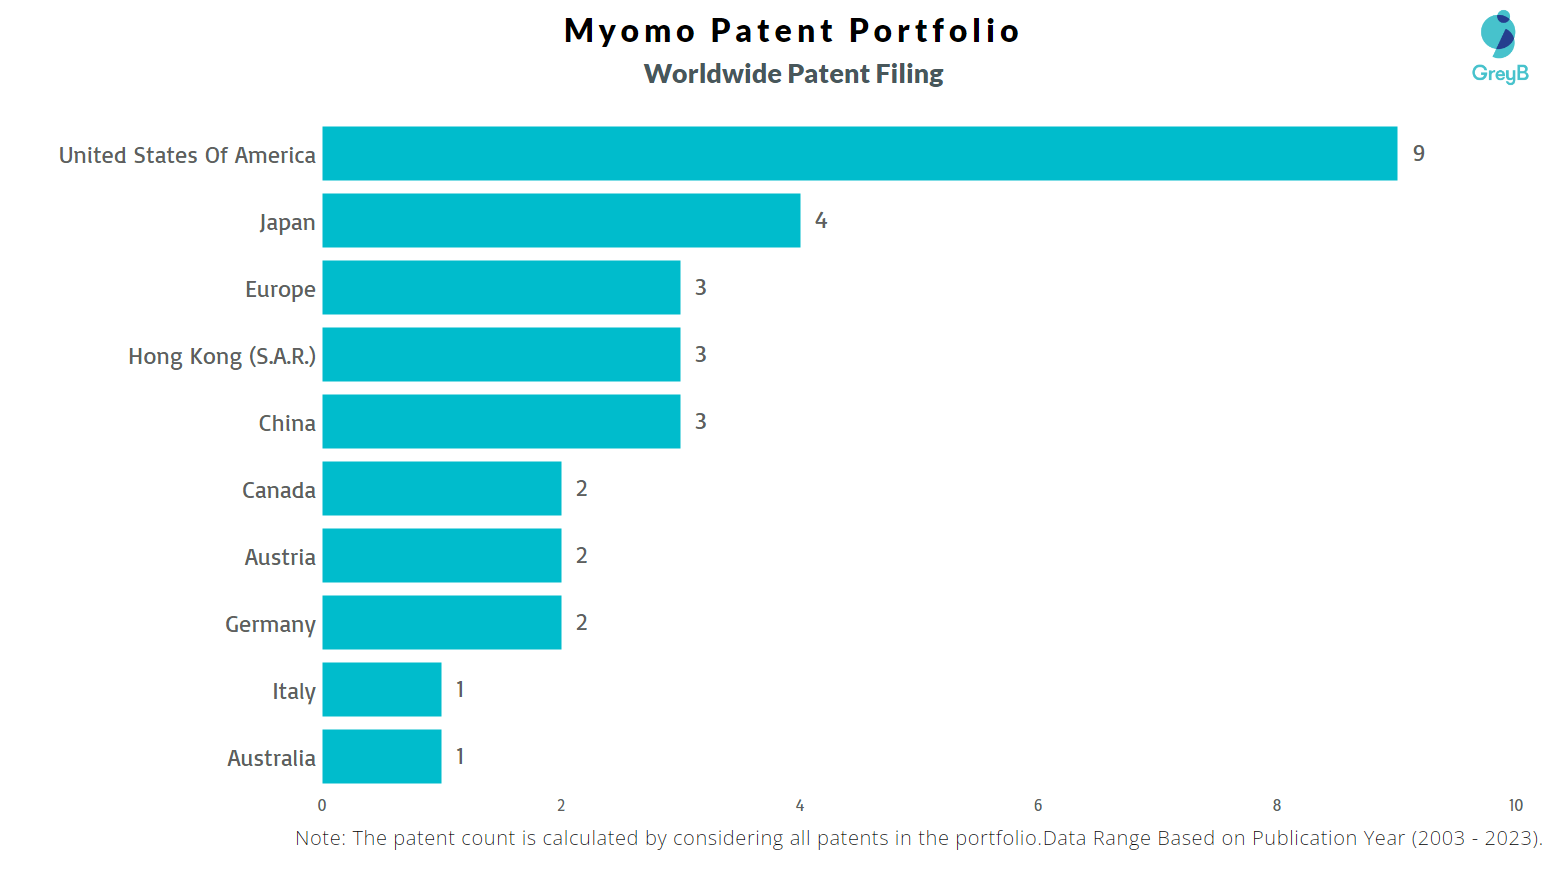 Myomo Worldwide Patent Filing